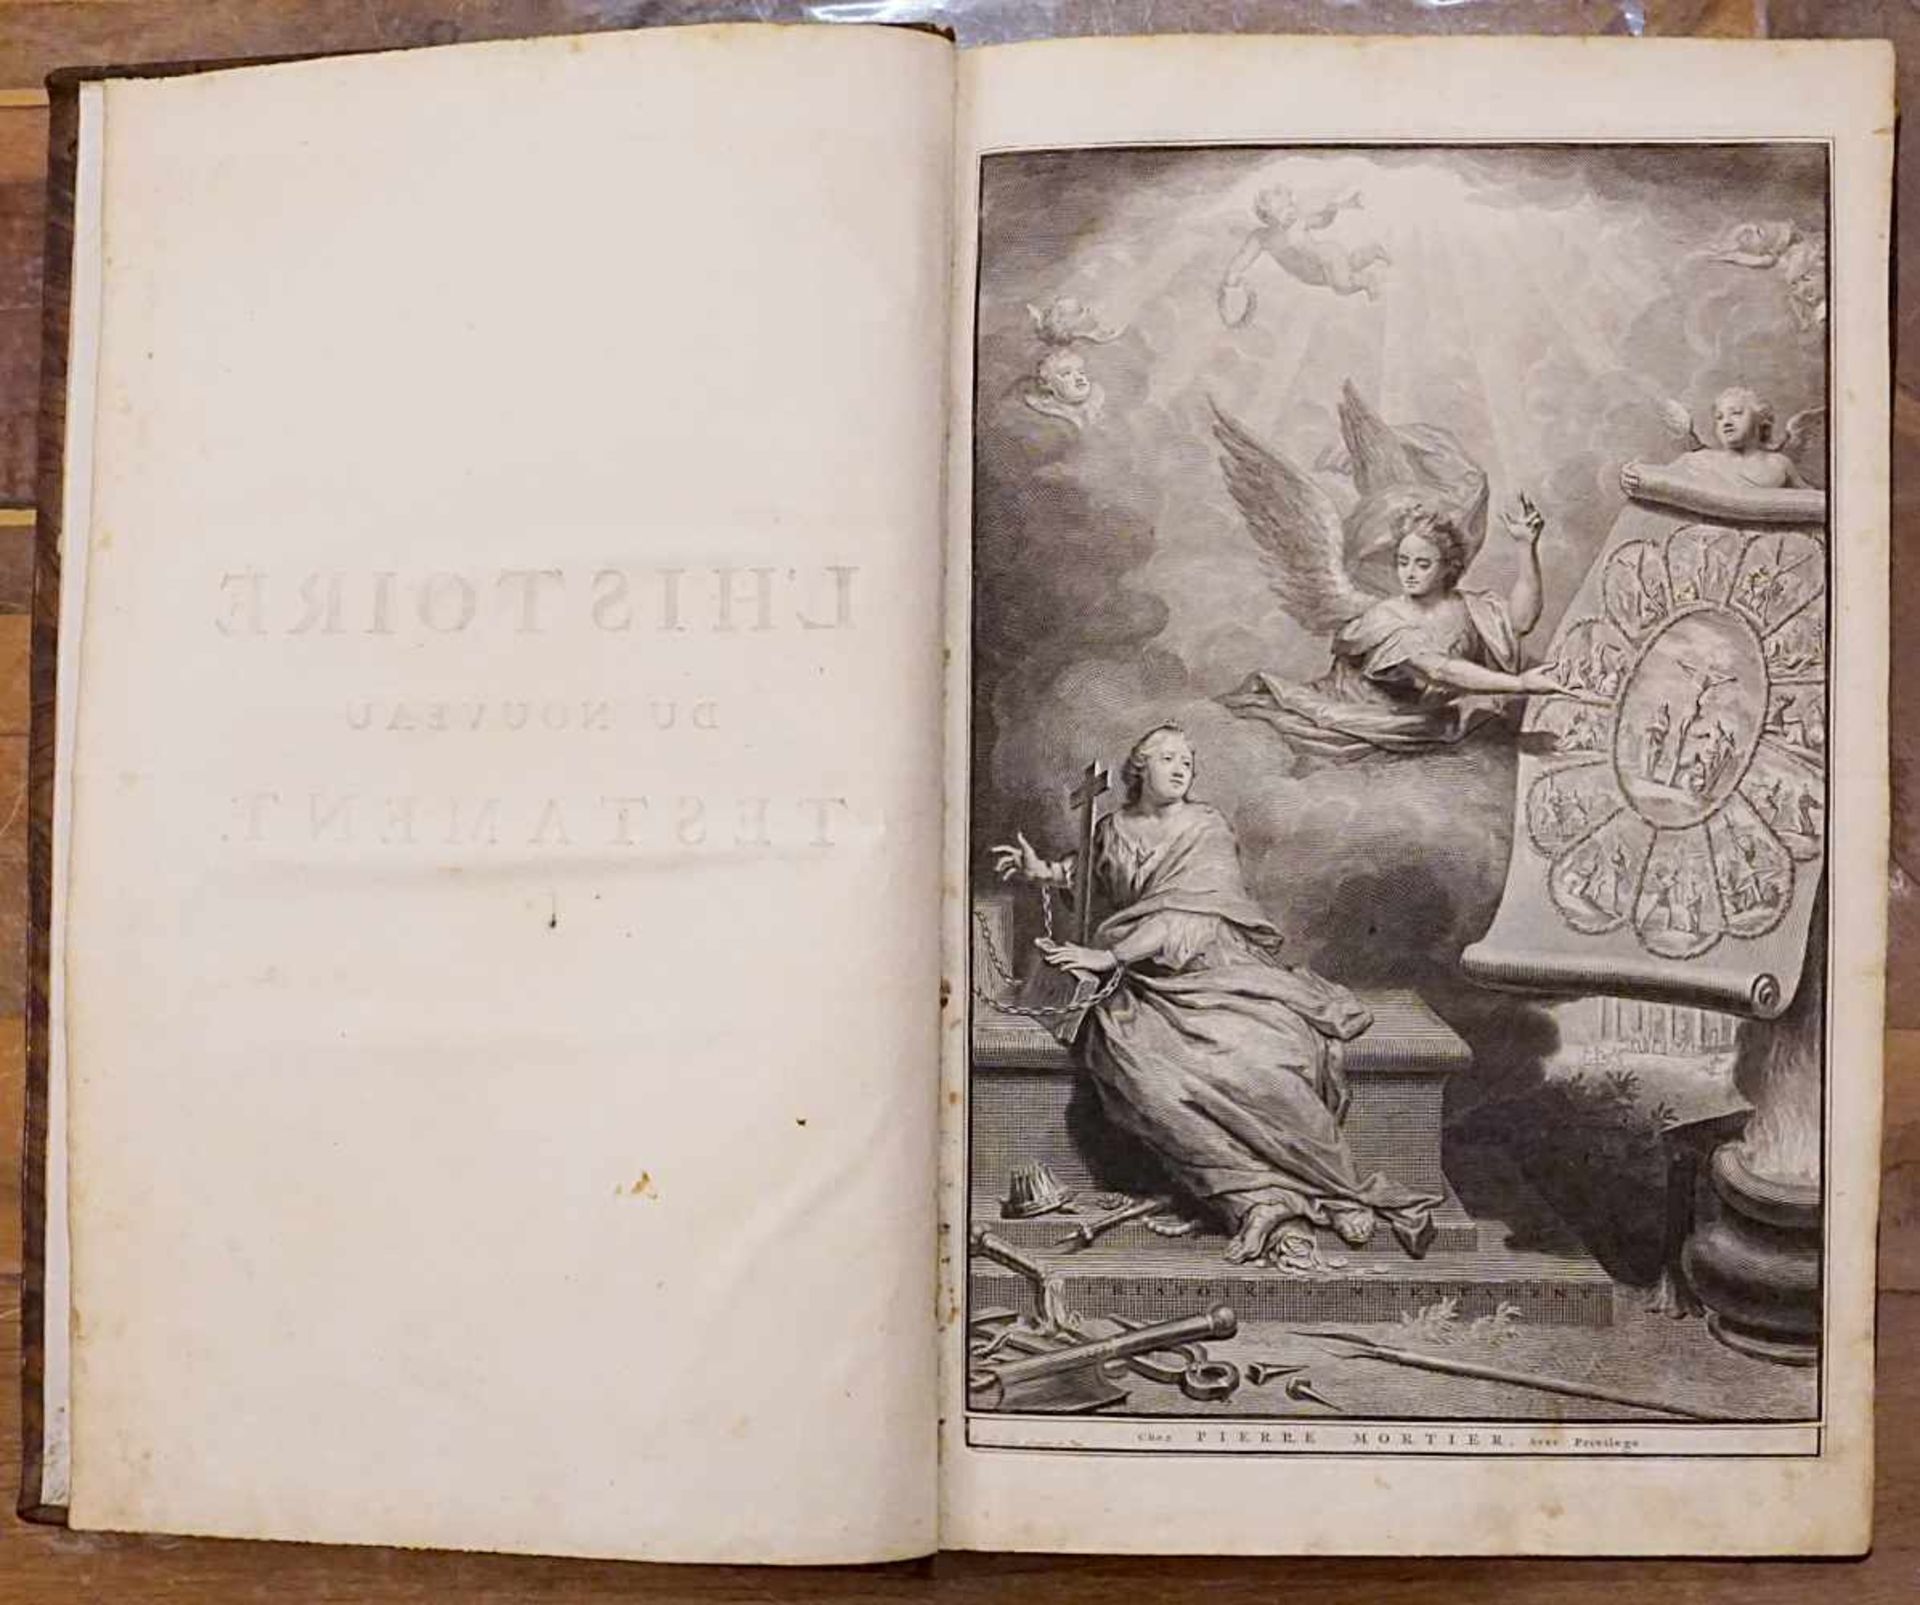 Buch "L'Histoire du Nouveau Testament", Herausgeber Pierre MORTIER, Amsterdam 1700,Titelkupfer, - Bild 2 aus 3